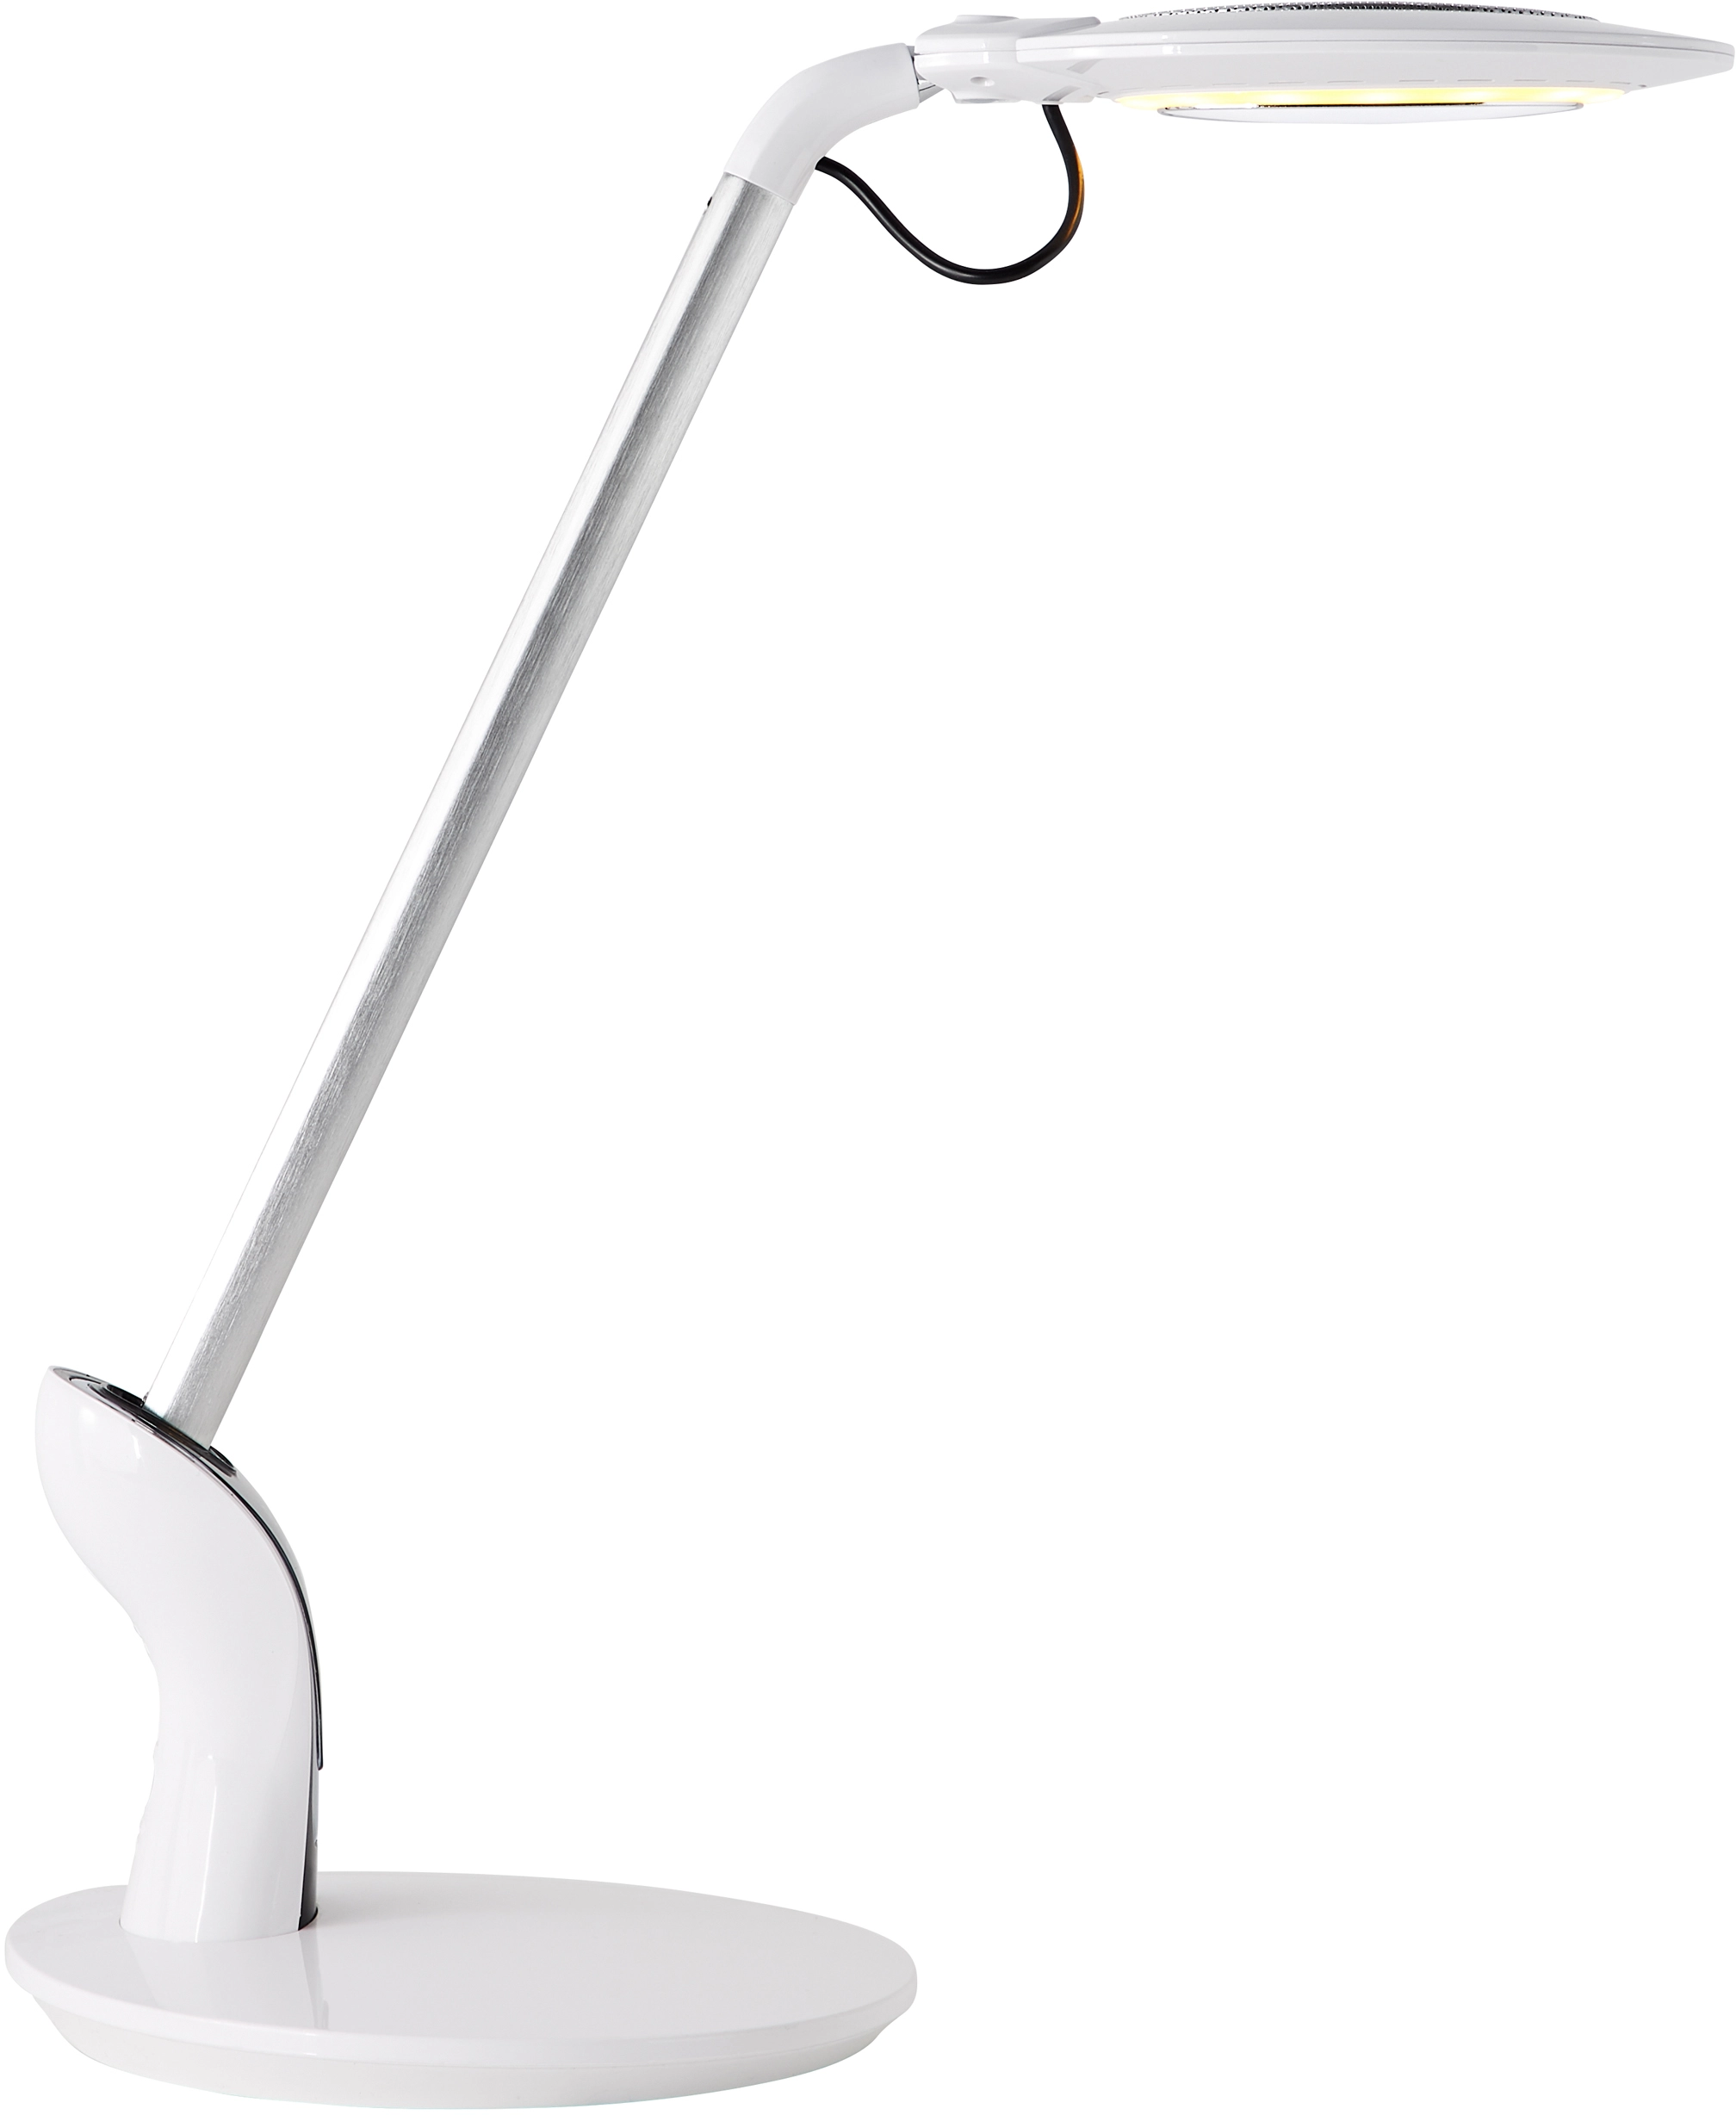 Brilliant LED-Tischlampe Elina 8 W Touchdimmer Weiß kaufen bei OBI | Tischlampen